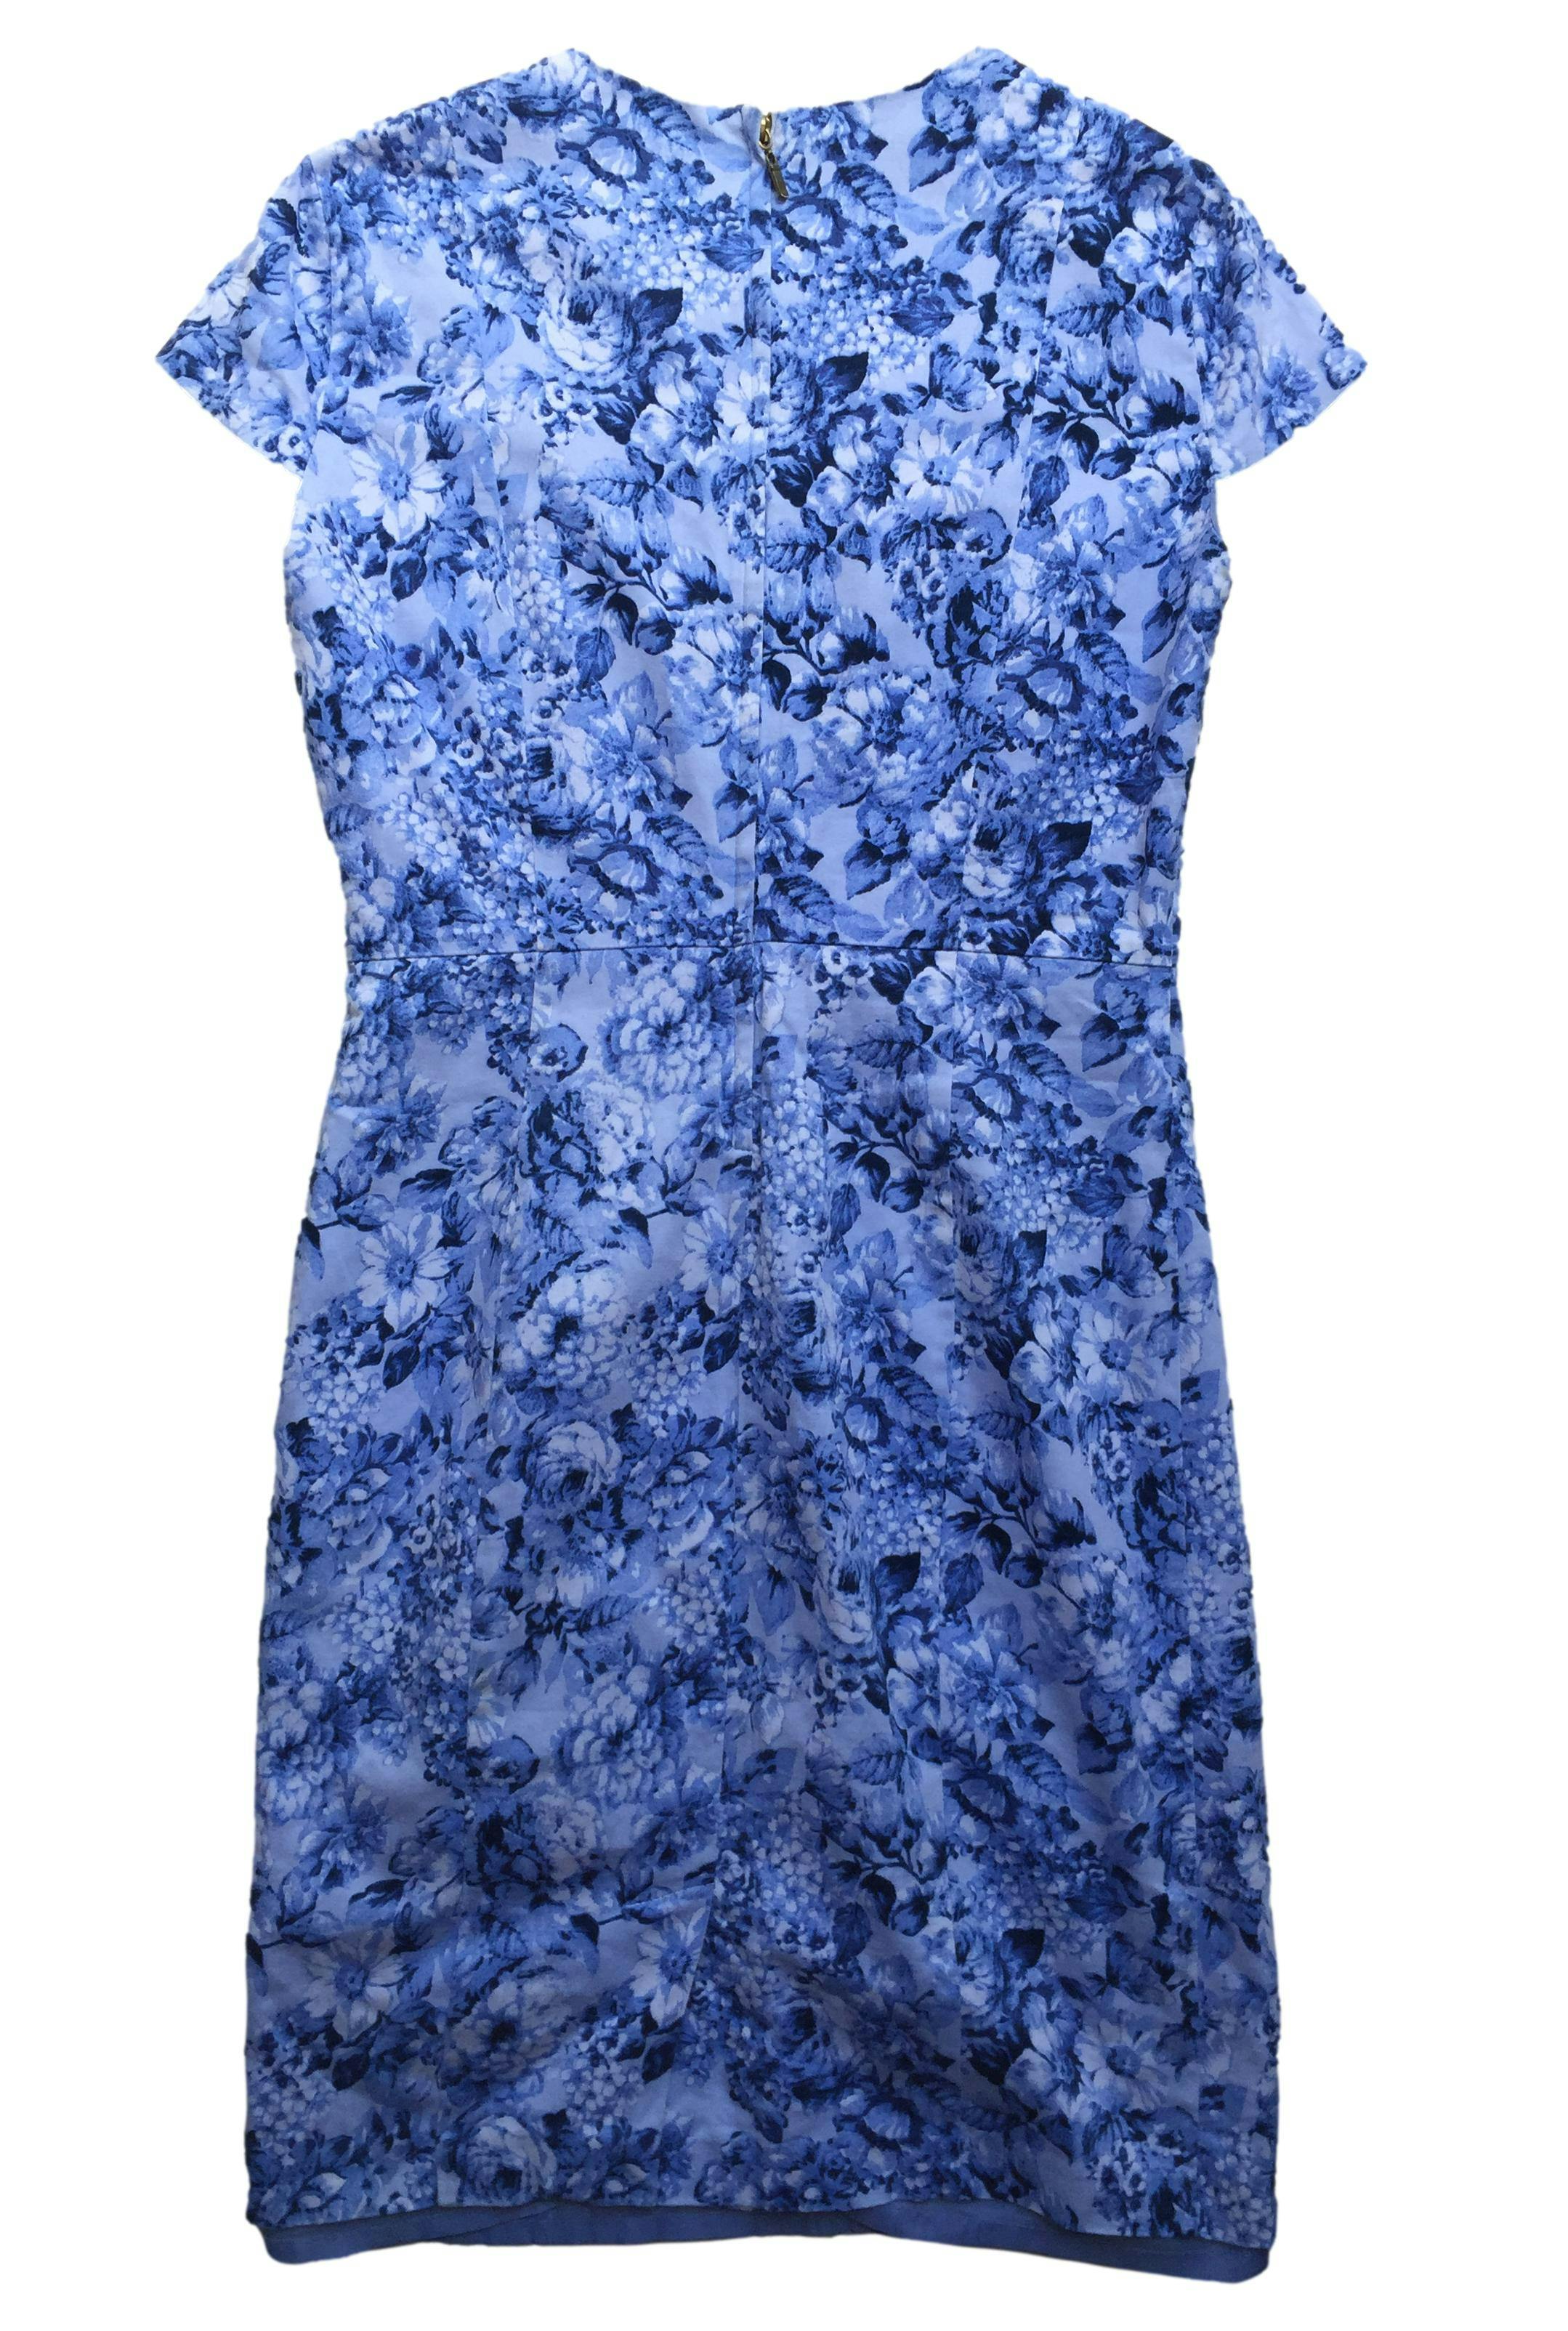 Vestido Joaquim Miro celeste con estampado floral, tela 97% algodón con forro, pinzas y cierre posterior. Busto 90cm, Largo 90cm.